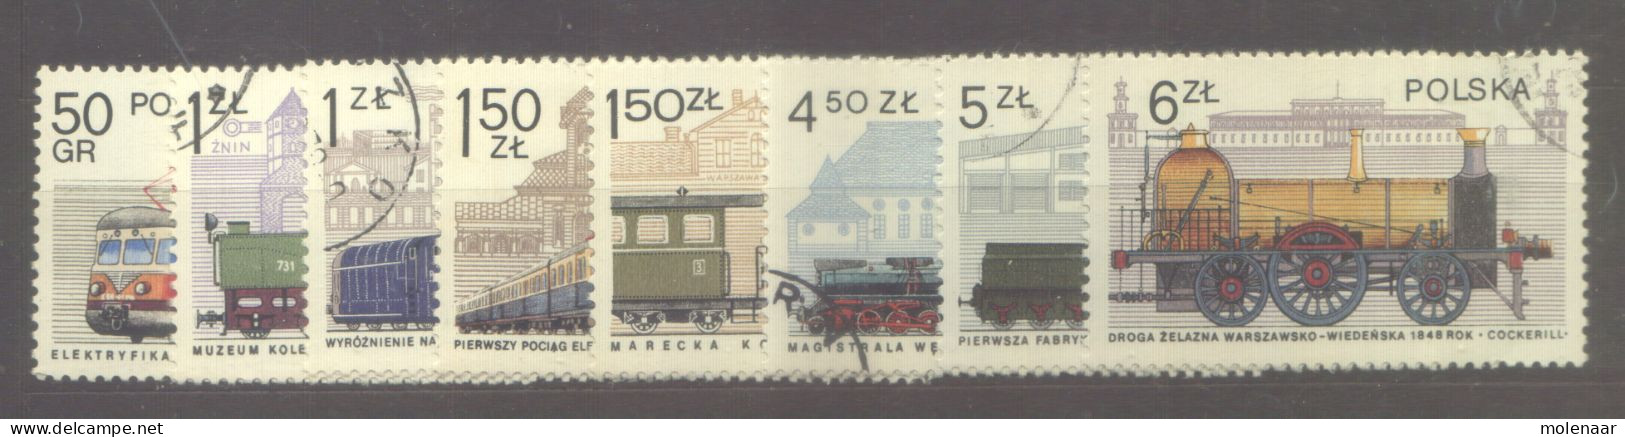 Postzegels > Europa > Polen > 1944-.... Republiek > 1971-80 > Gebruikt No. 2540-2547  (24152) - Usati